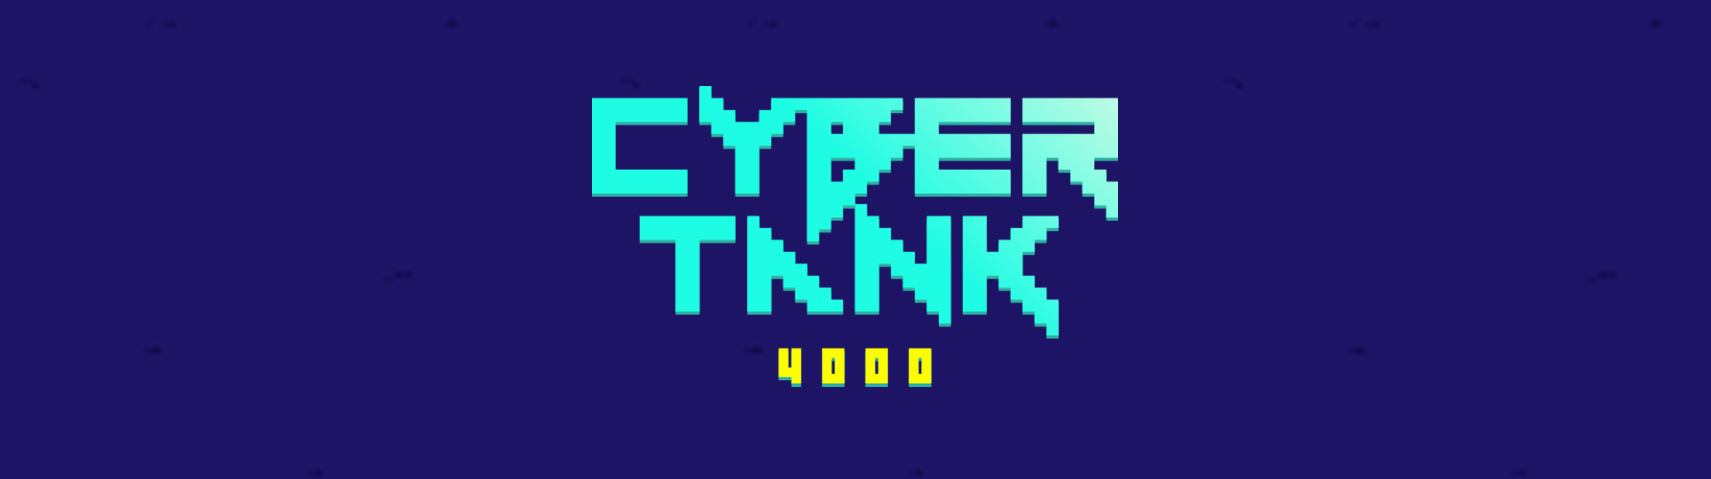 CyberTank 4000